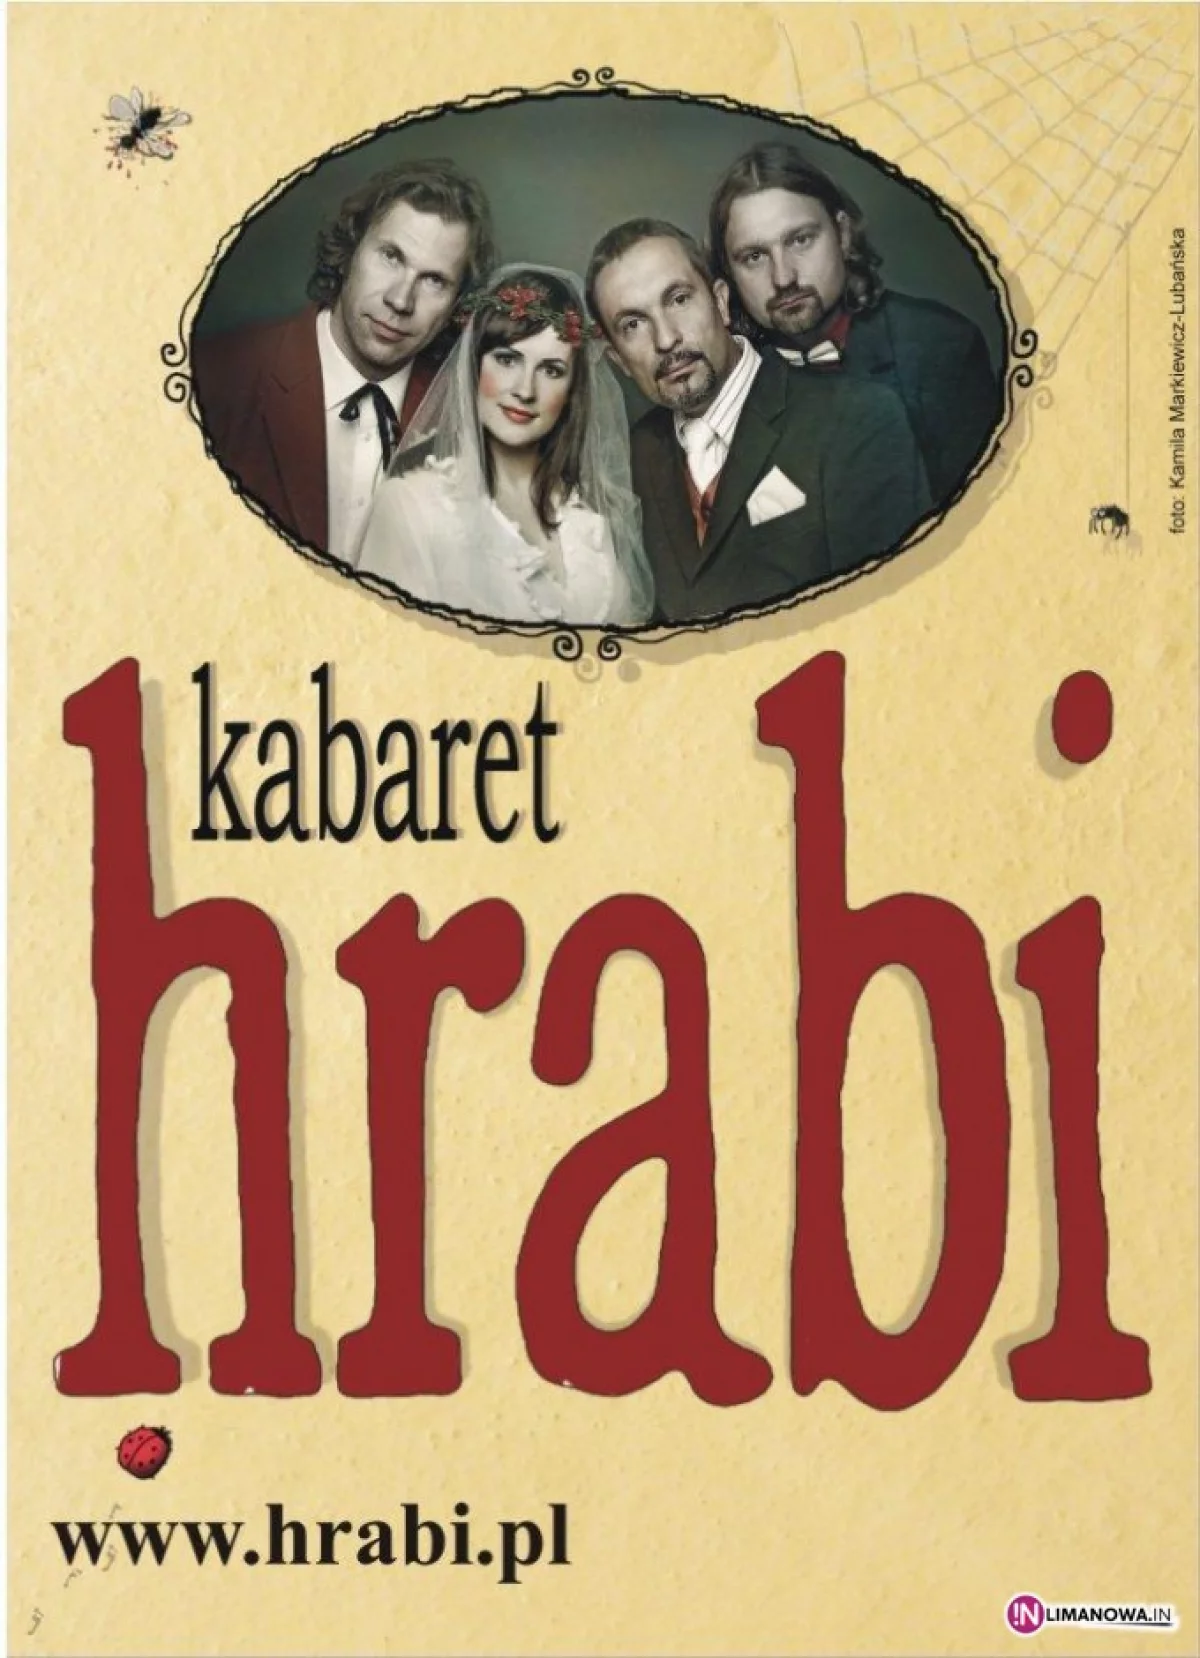 Kabaret HRABI w LDK - 14 października 2013  o godzinie 19:00